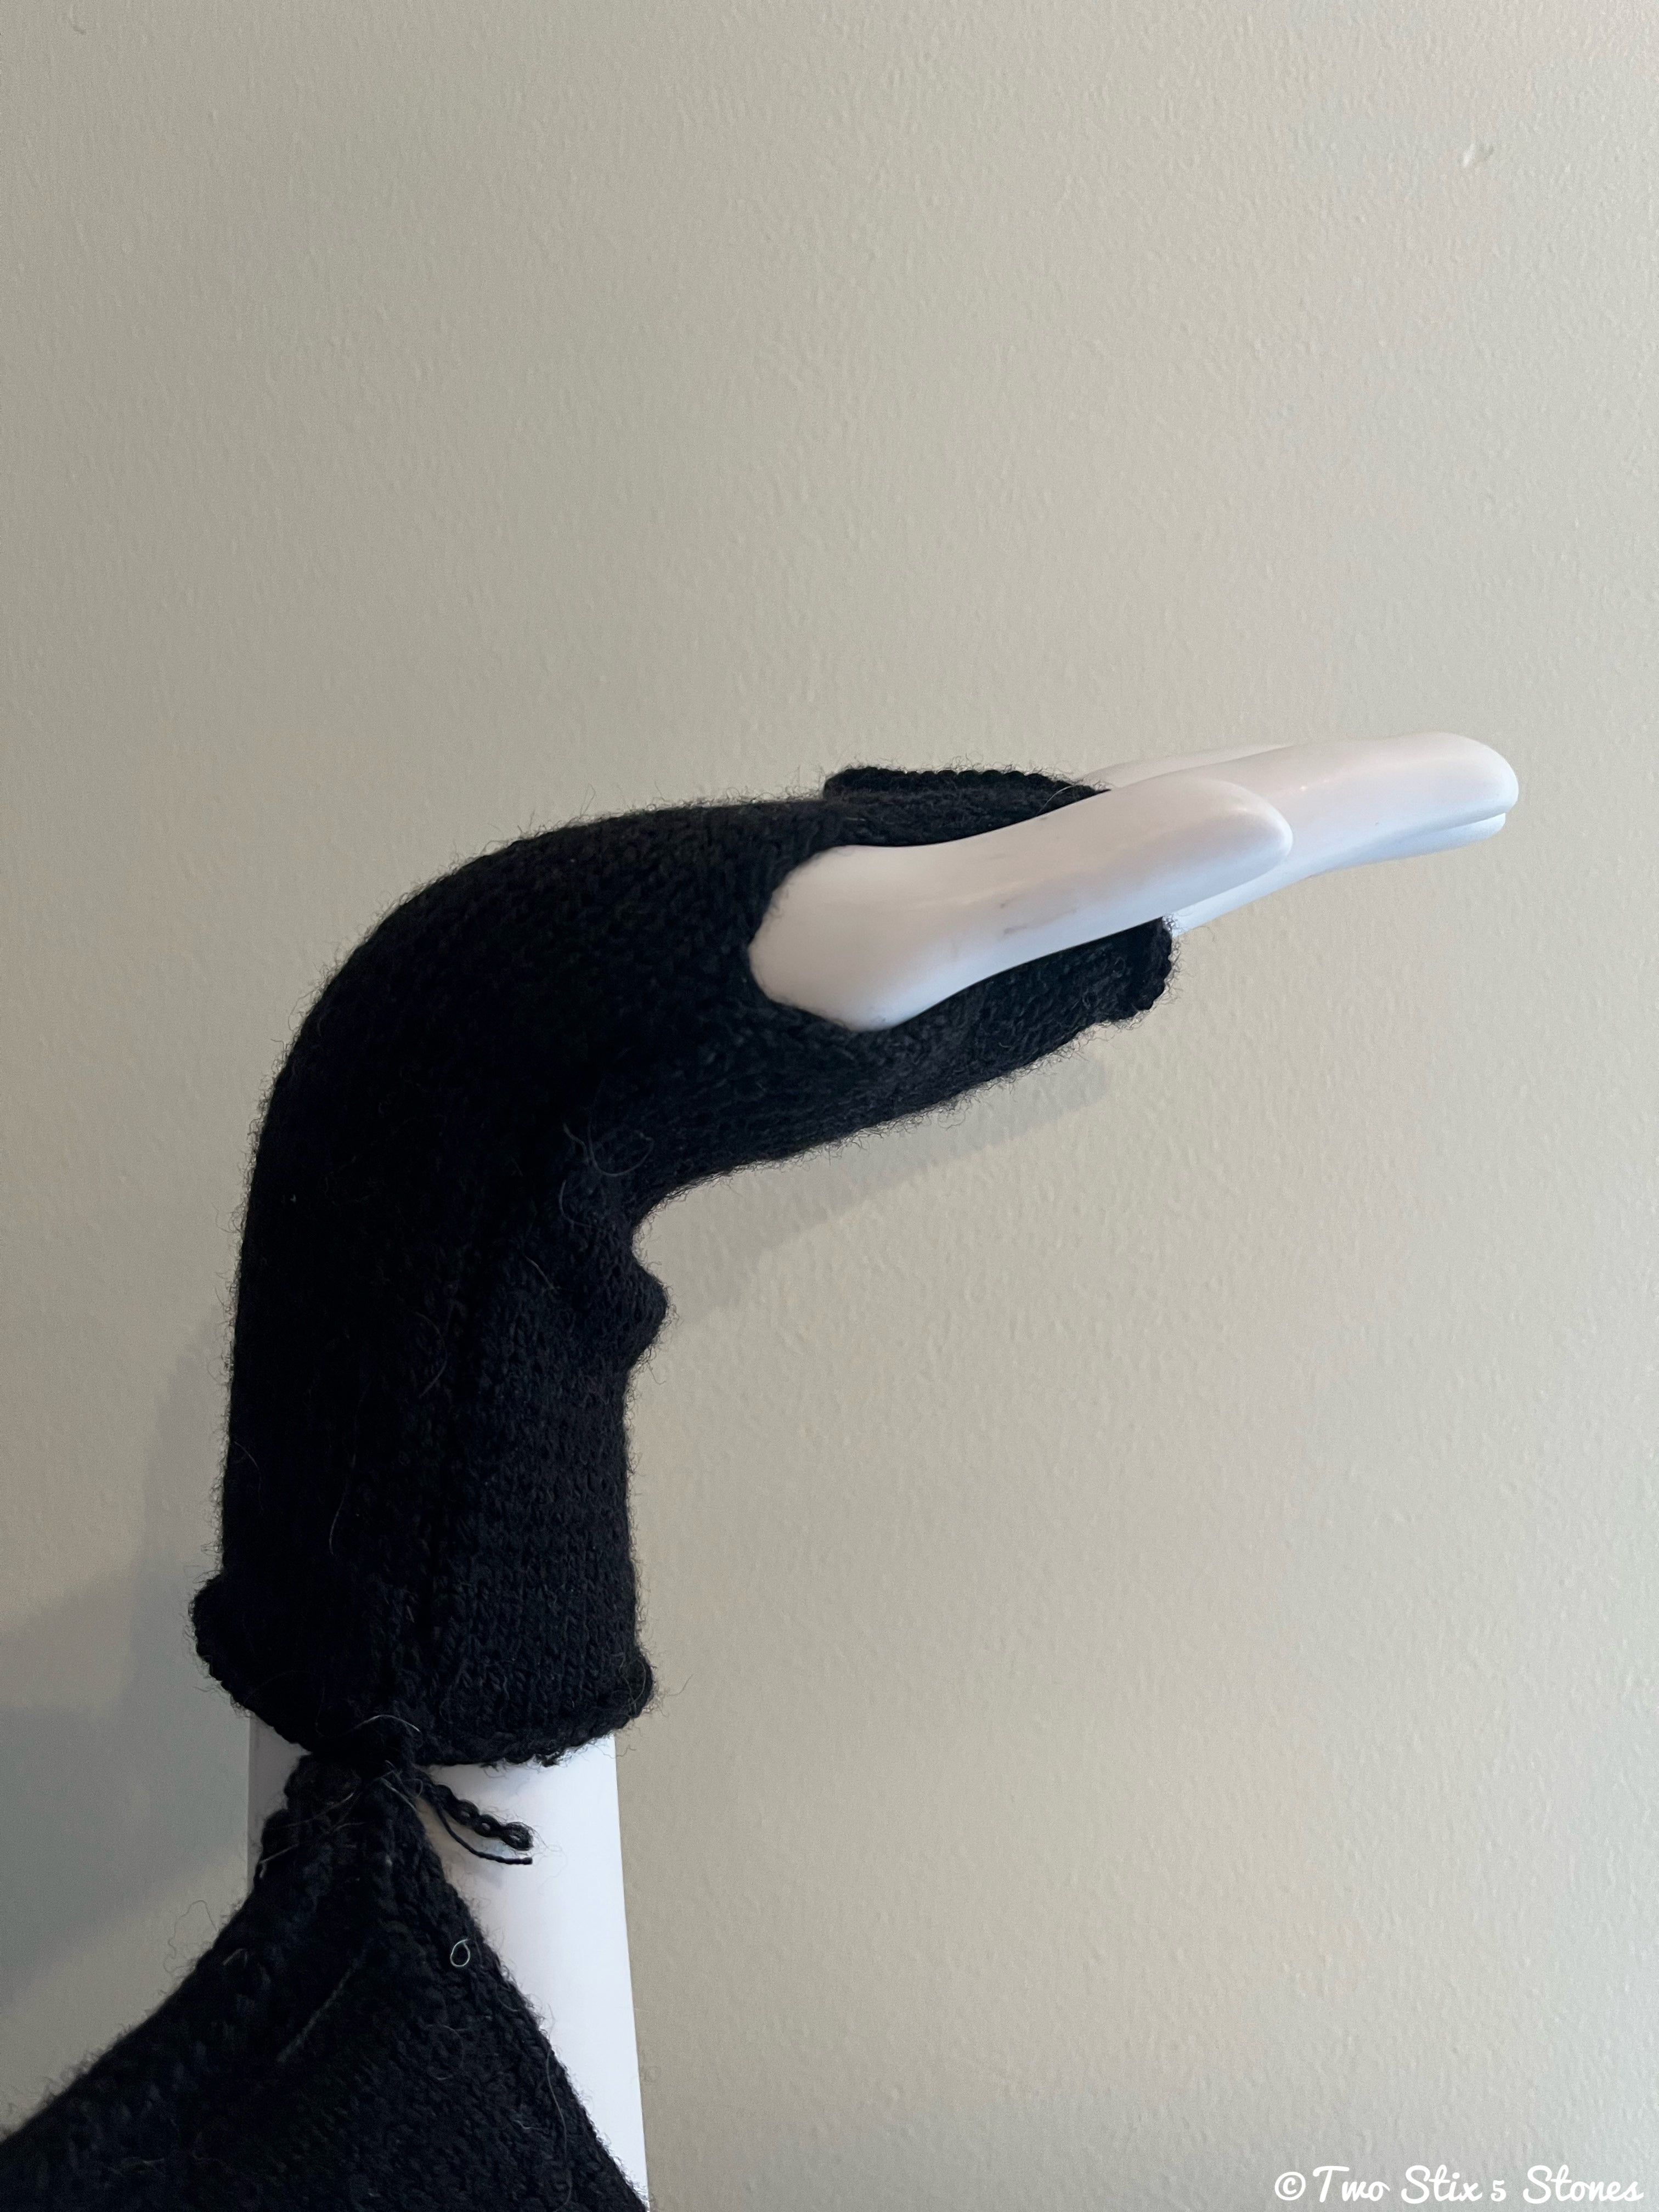 Black Fingerless Gloves